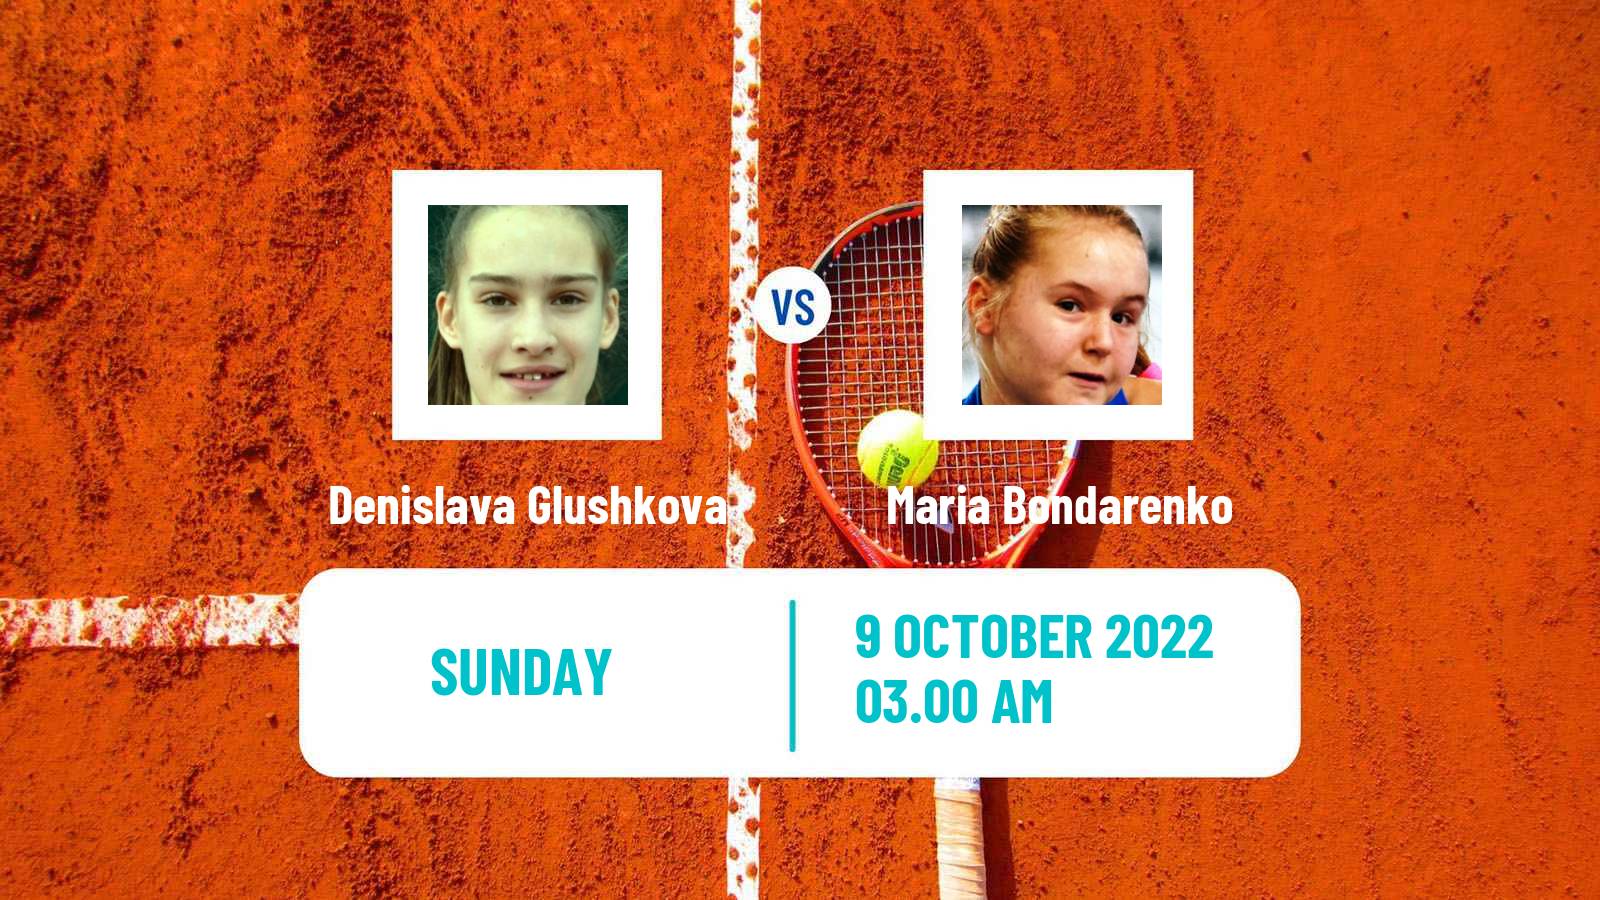 Tennis ITF Tournaments Denislava Glushkova - Maria Bondarenko